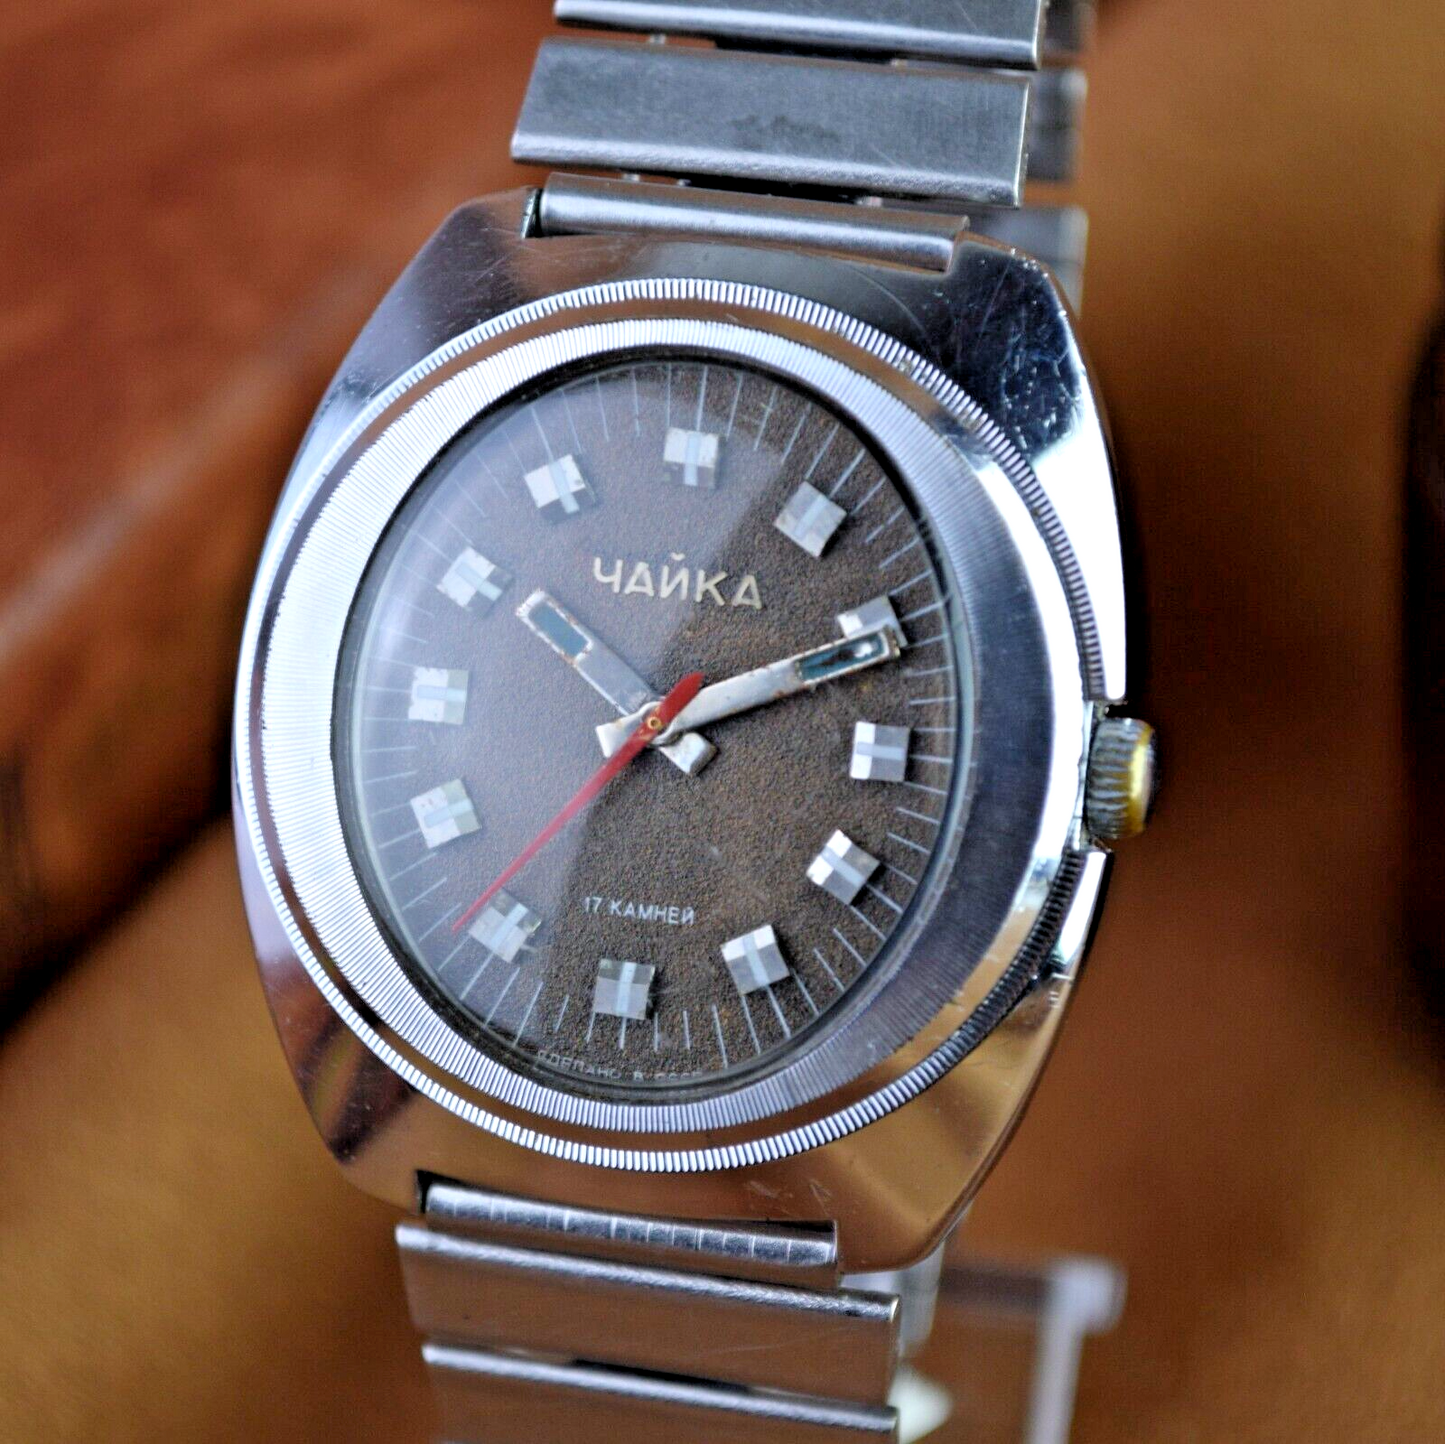 Soviet Watch Chaika Vintage Mens Watch 2609 H Original Vintage Watch Brown Dial